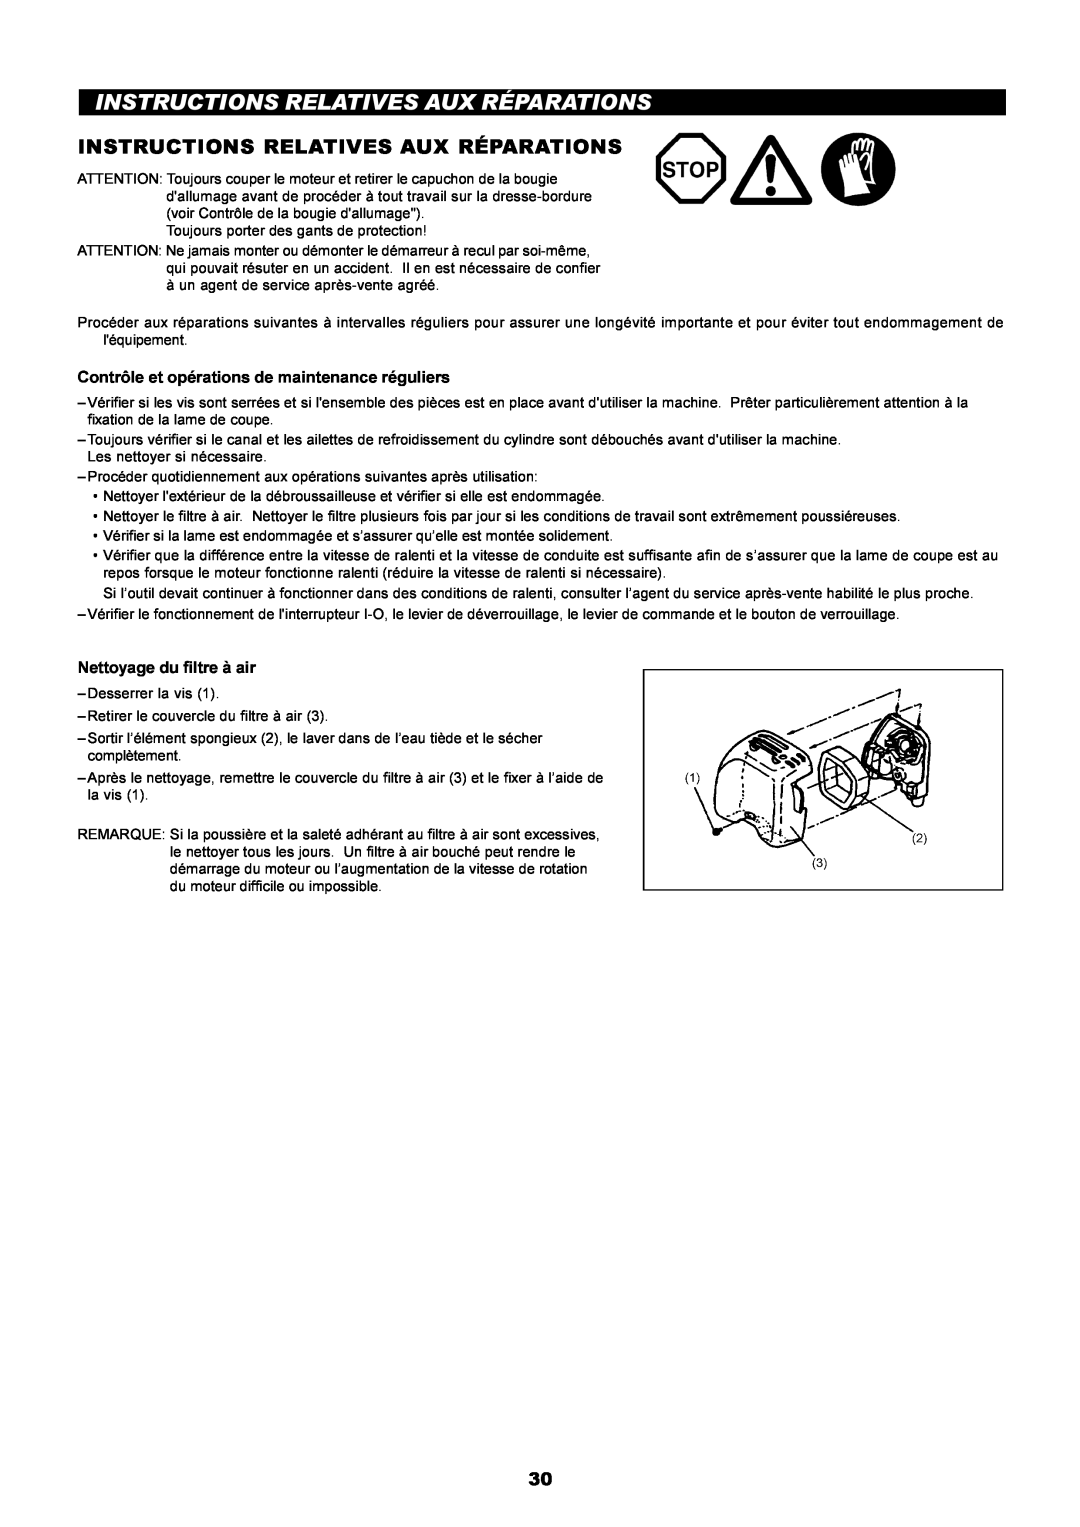 Dolmar PE-251 instruction manual Instructions Relatives Aux Réparations, Contrôle et opérations de maintenance réguliers 